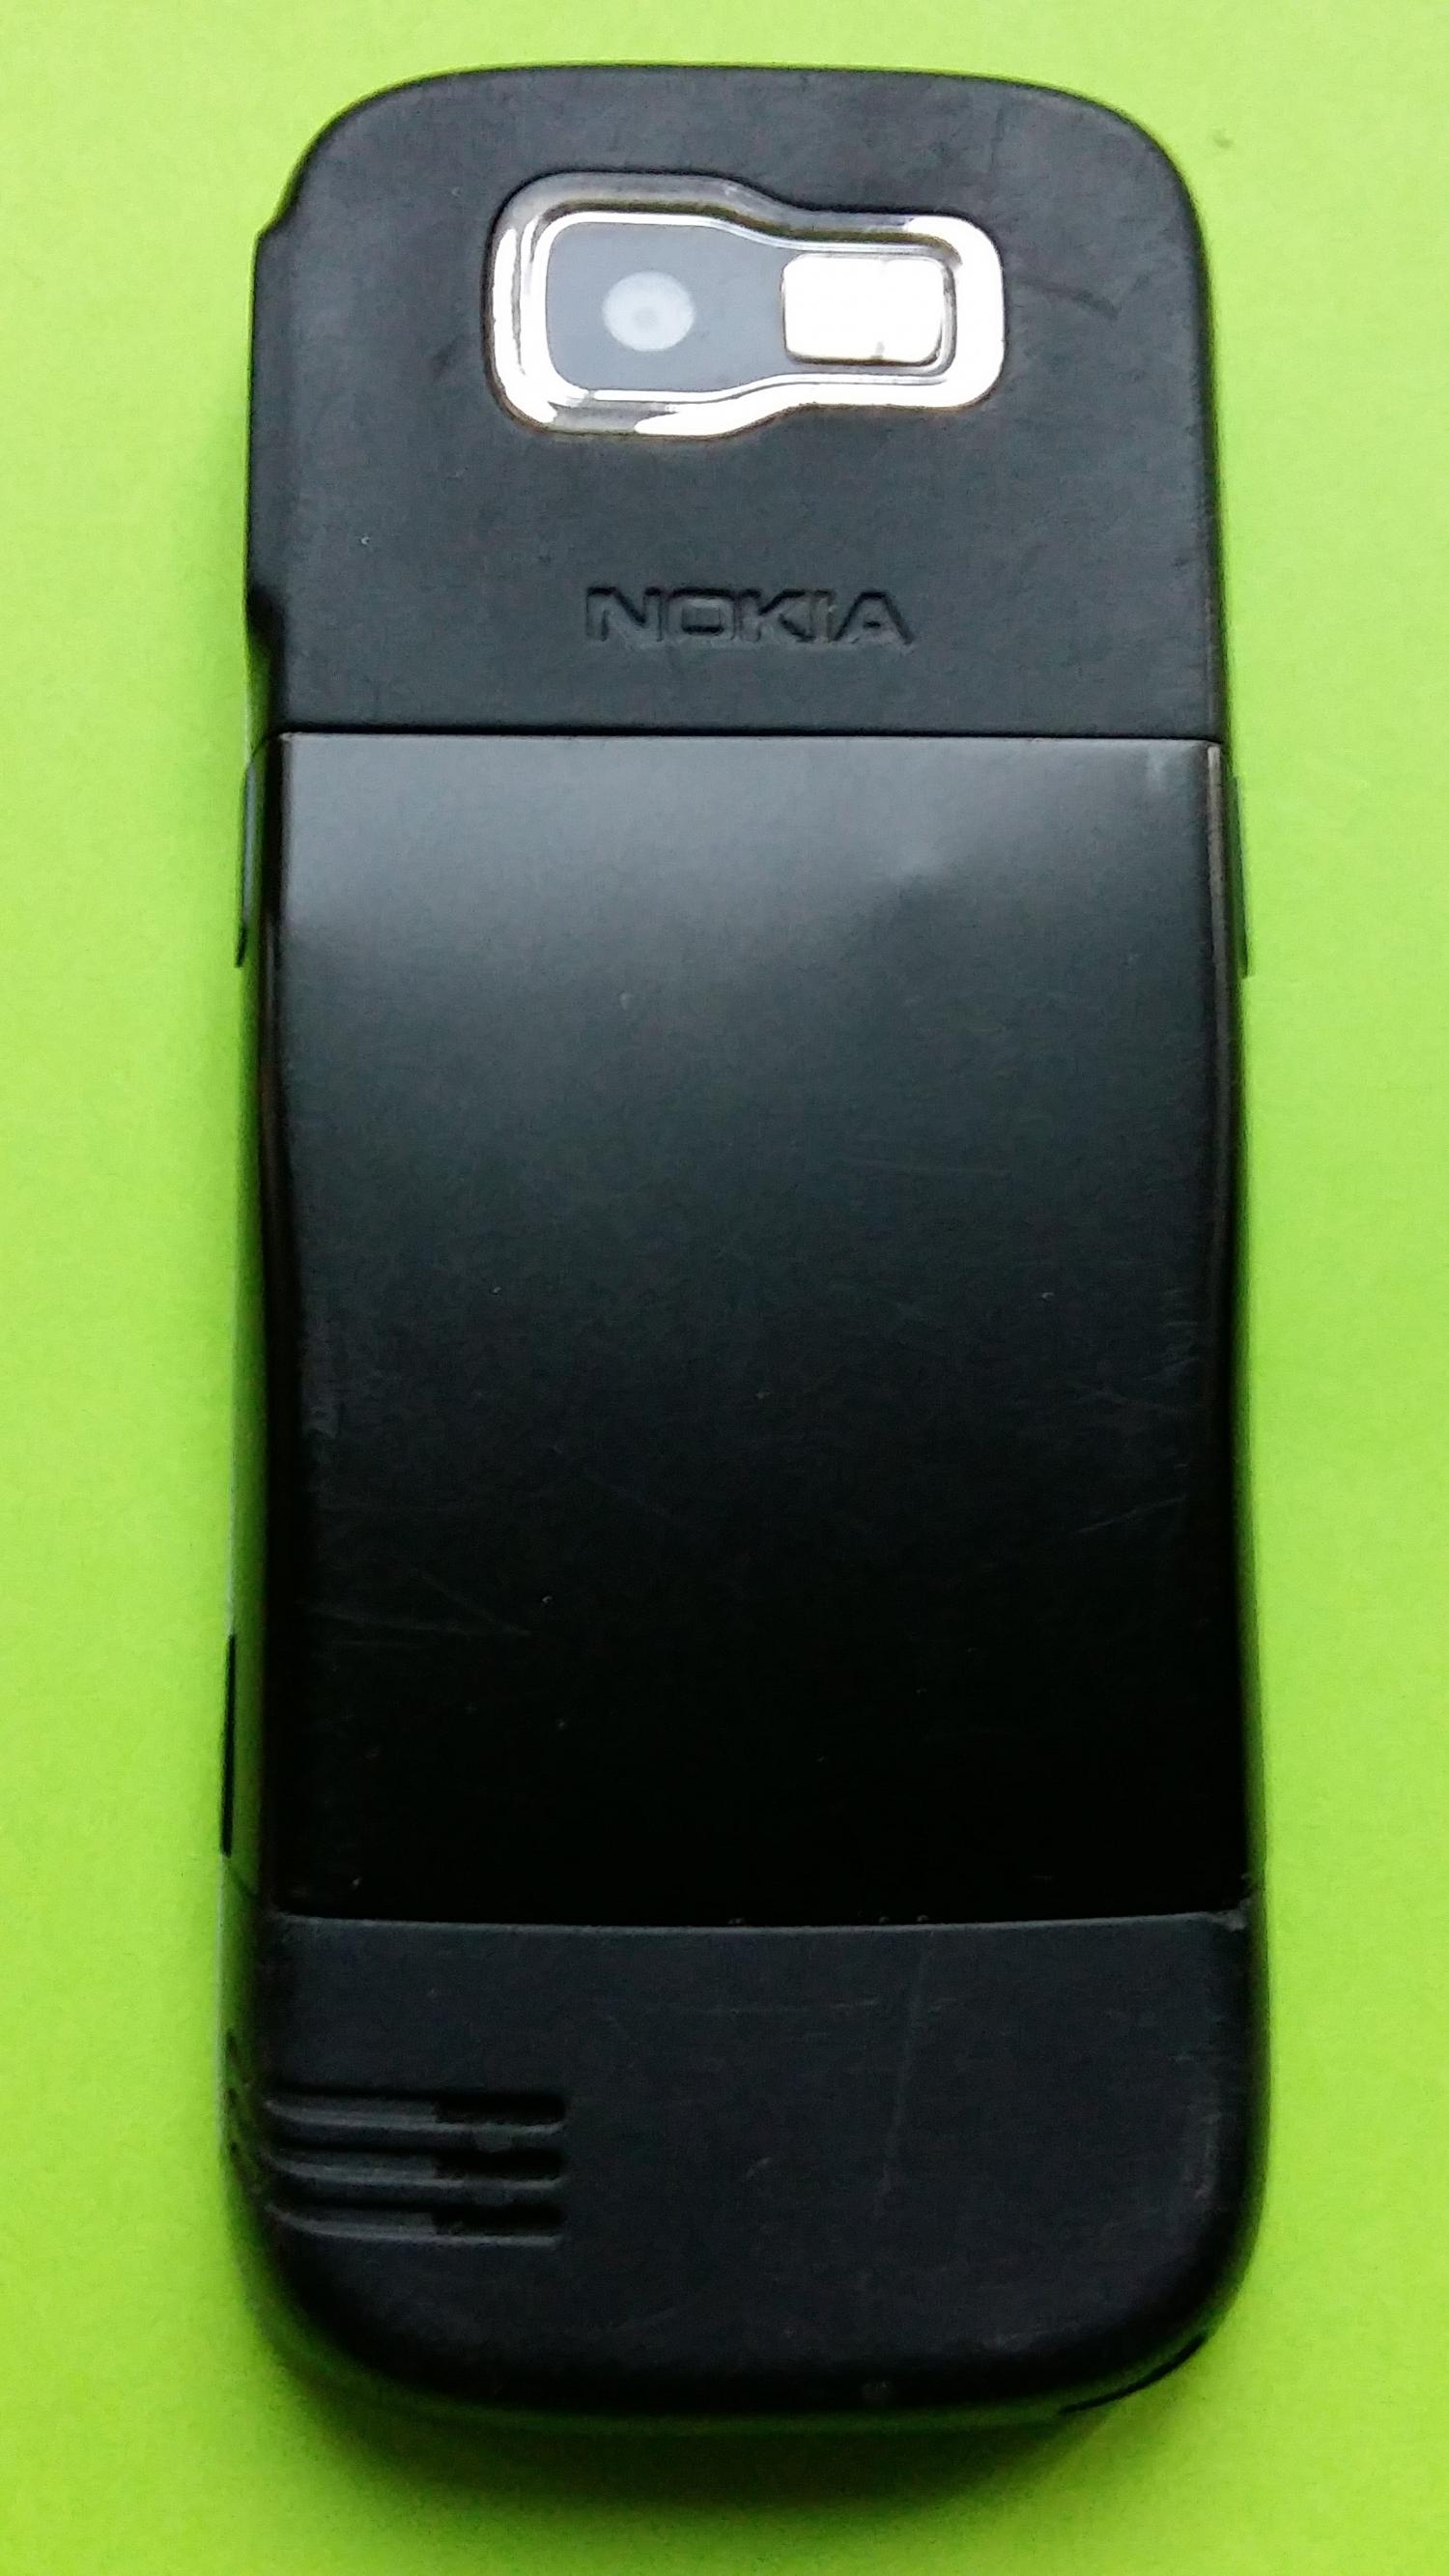 image-7328286-Nokia 2630 (2)2.jpg